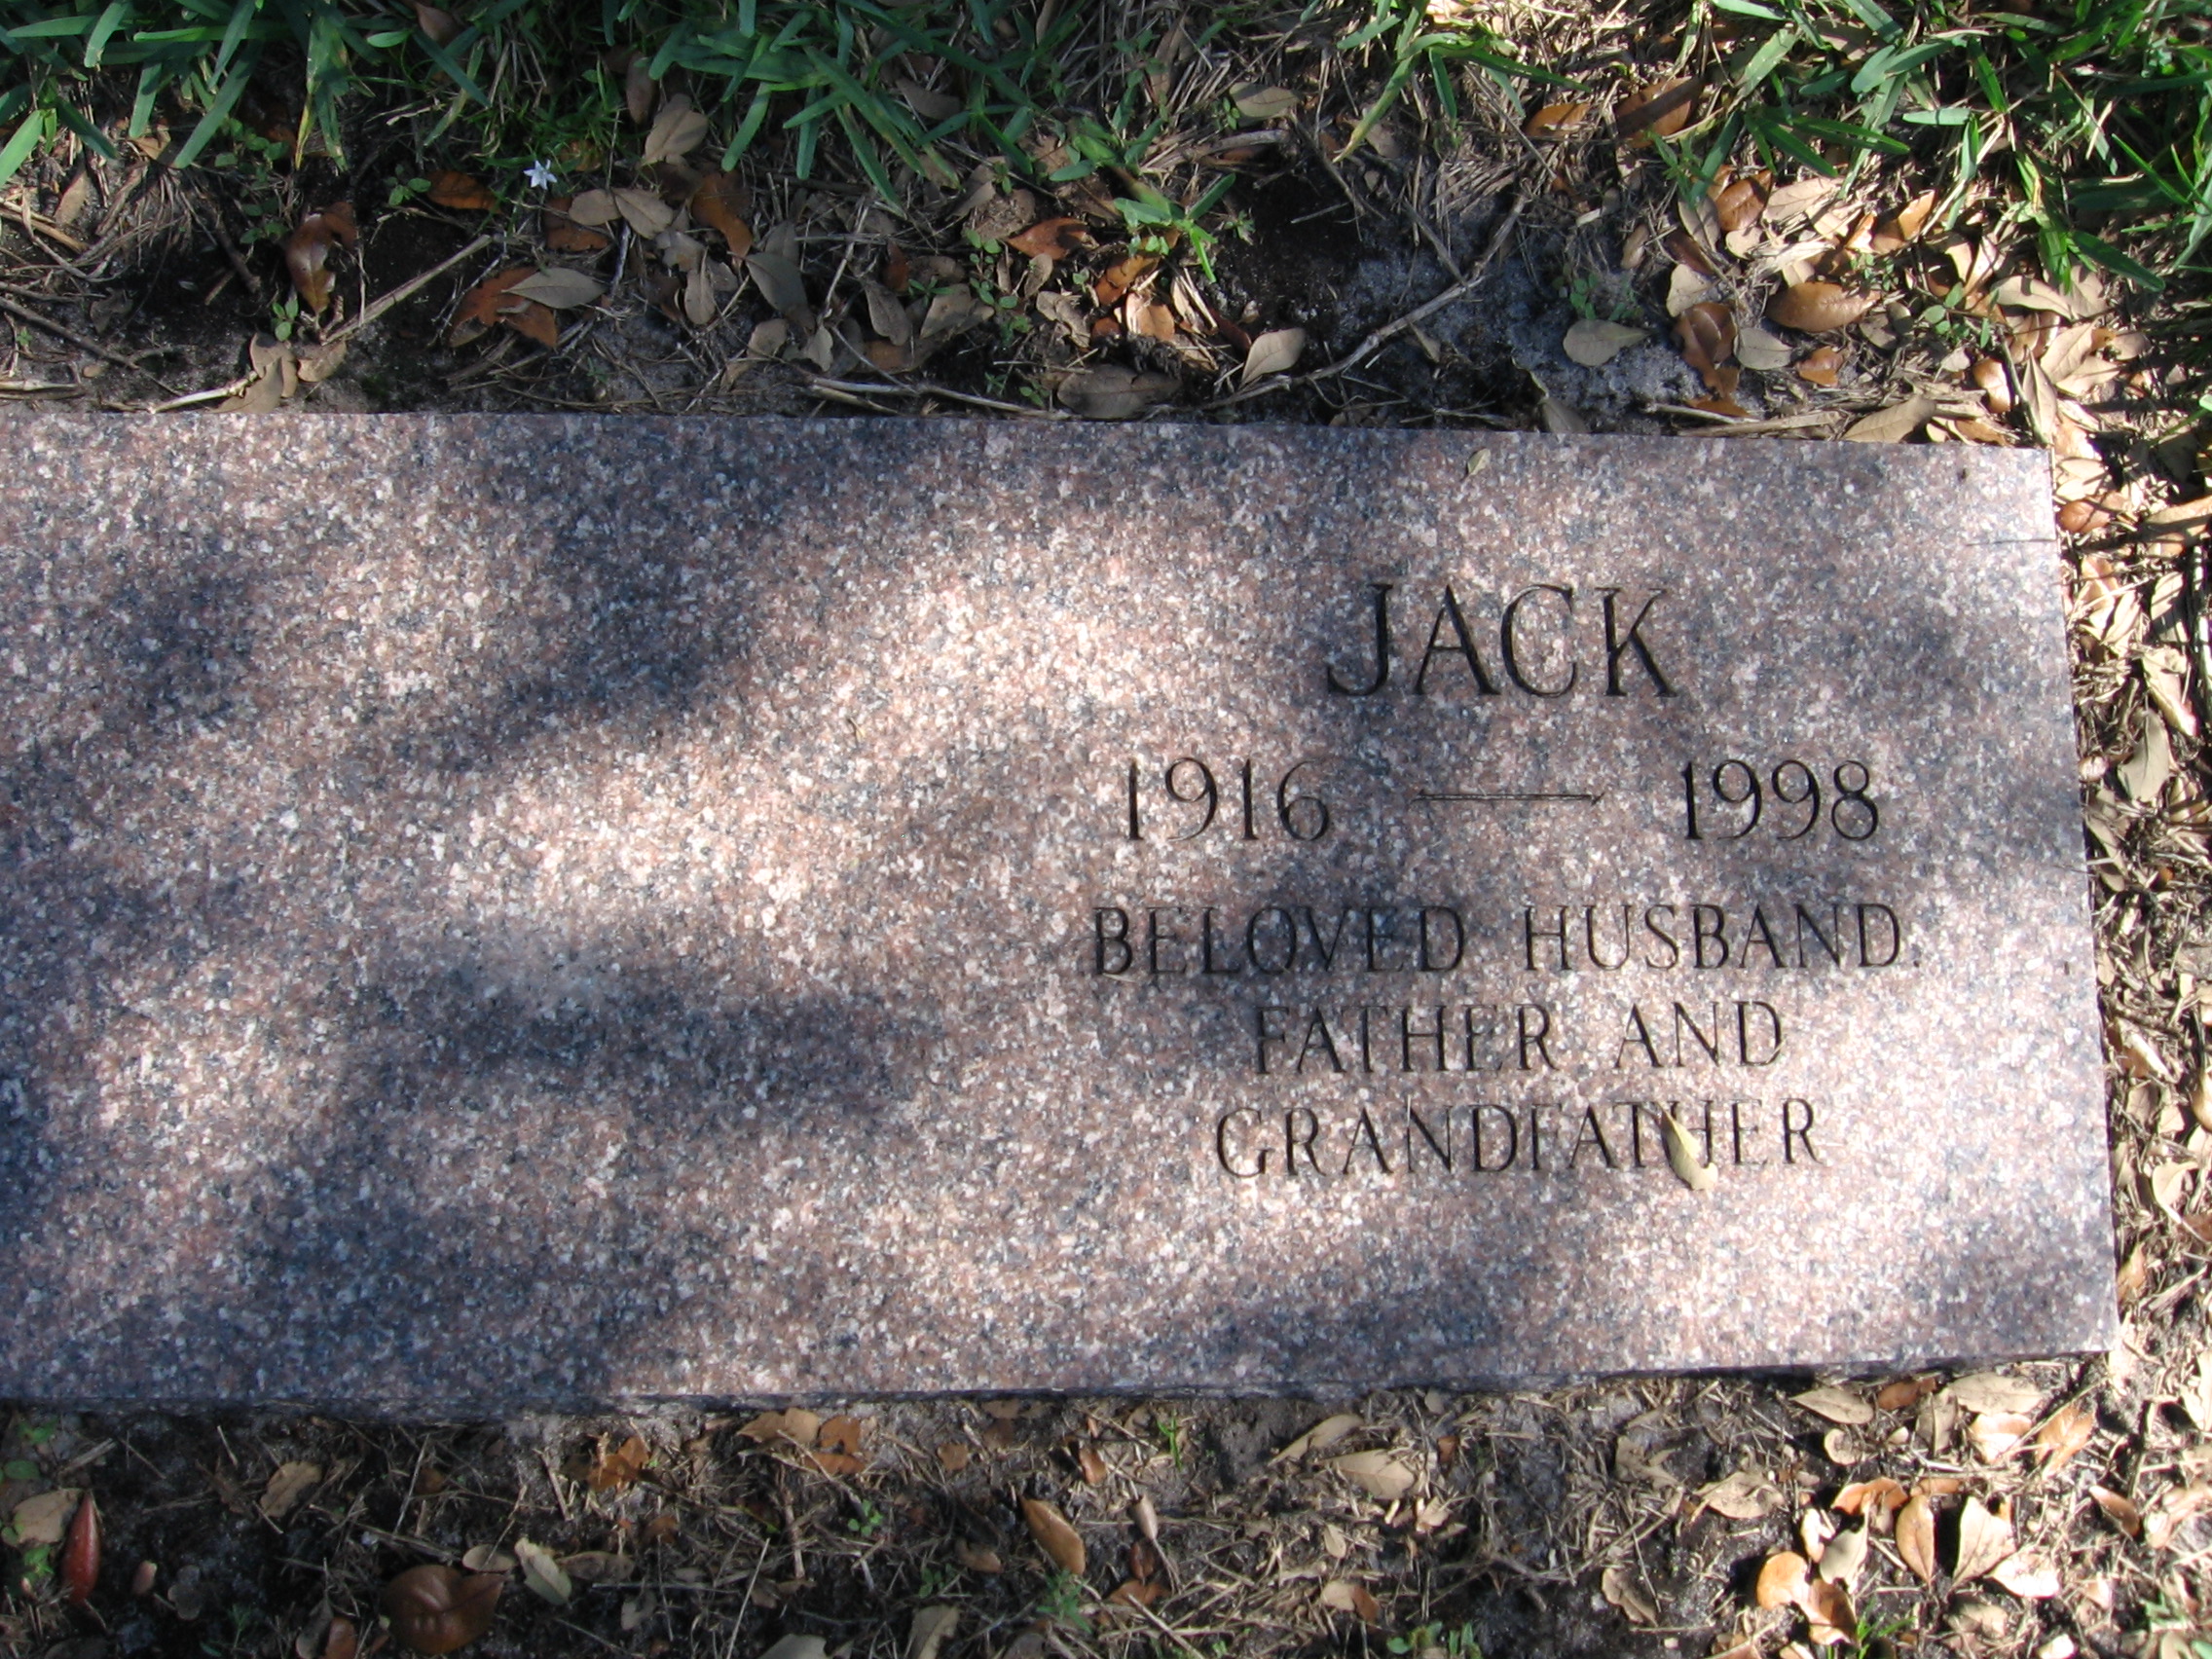 Jack Bennett